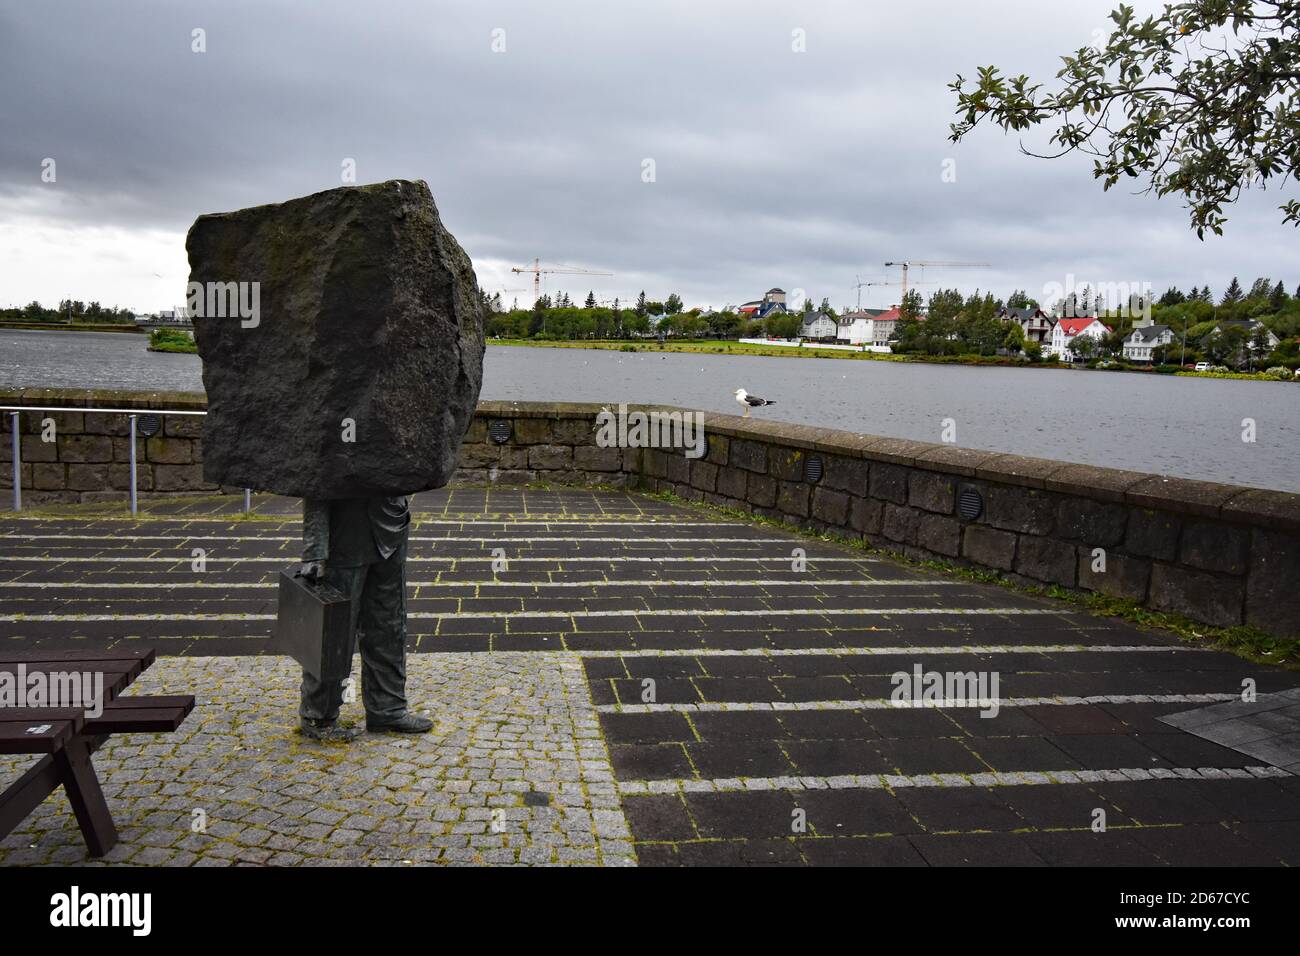 Monumento al burocrate sconosciuto sul bordo del lago Tjornin, Reykjavik, Islanda. Una scultura raffigurante la metà inferiore di un uomo che porta una valigetta. Foto Stock